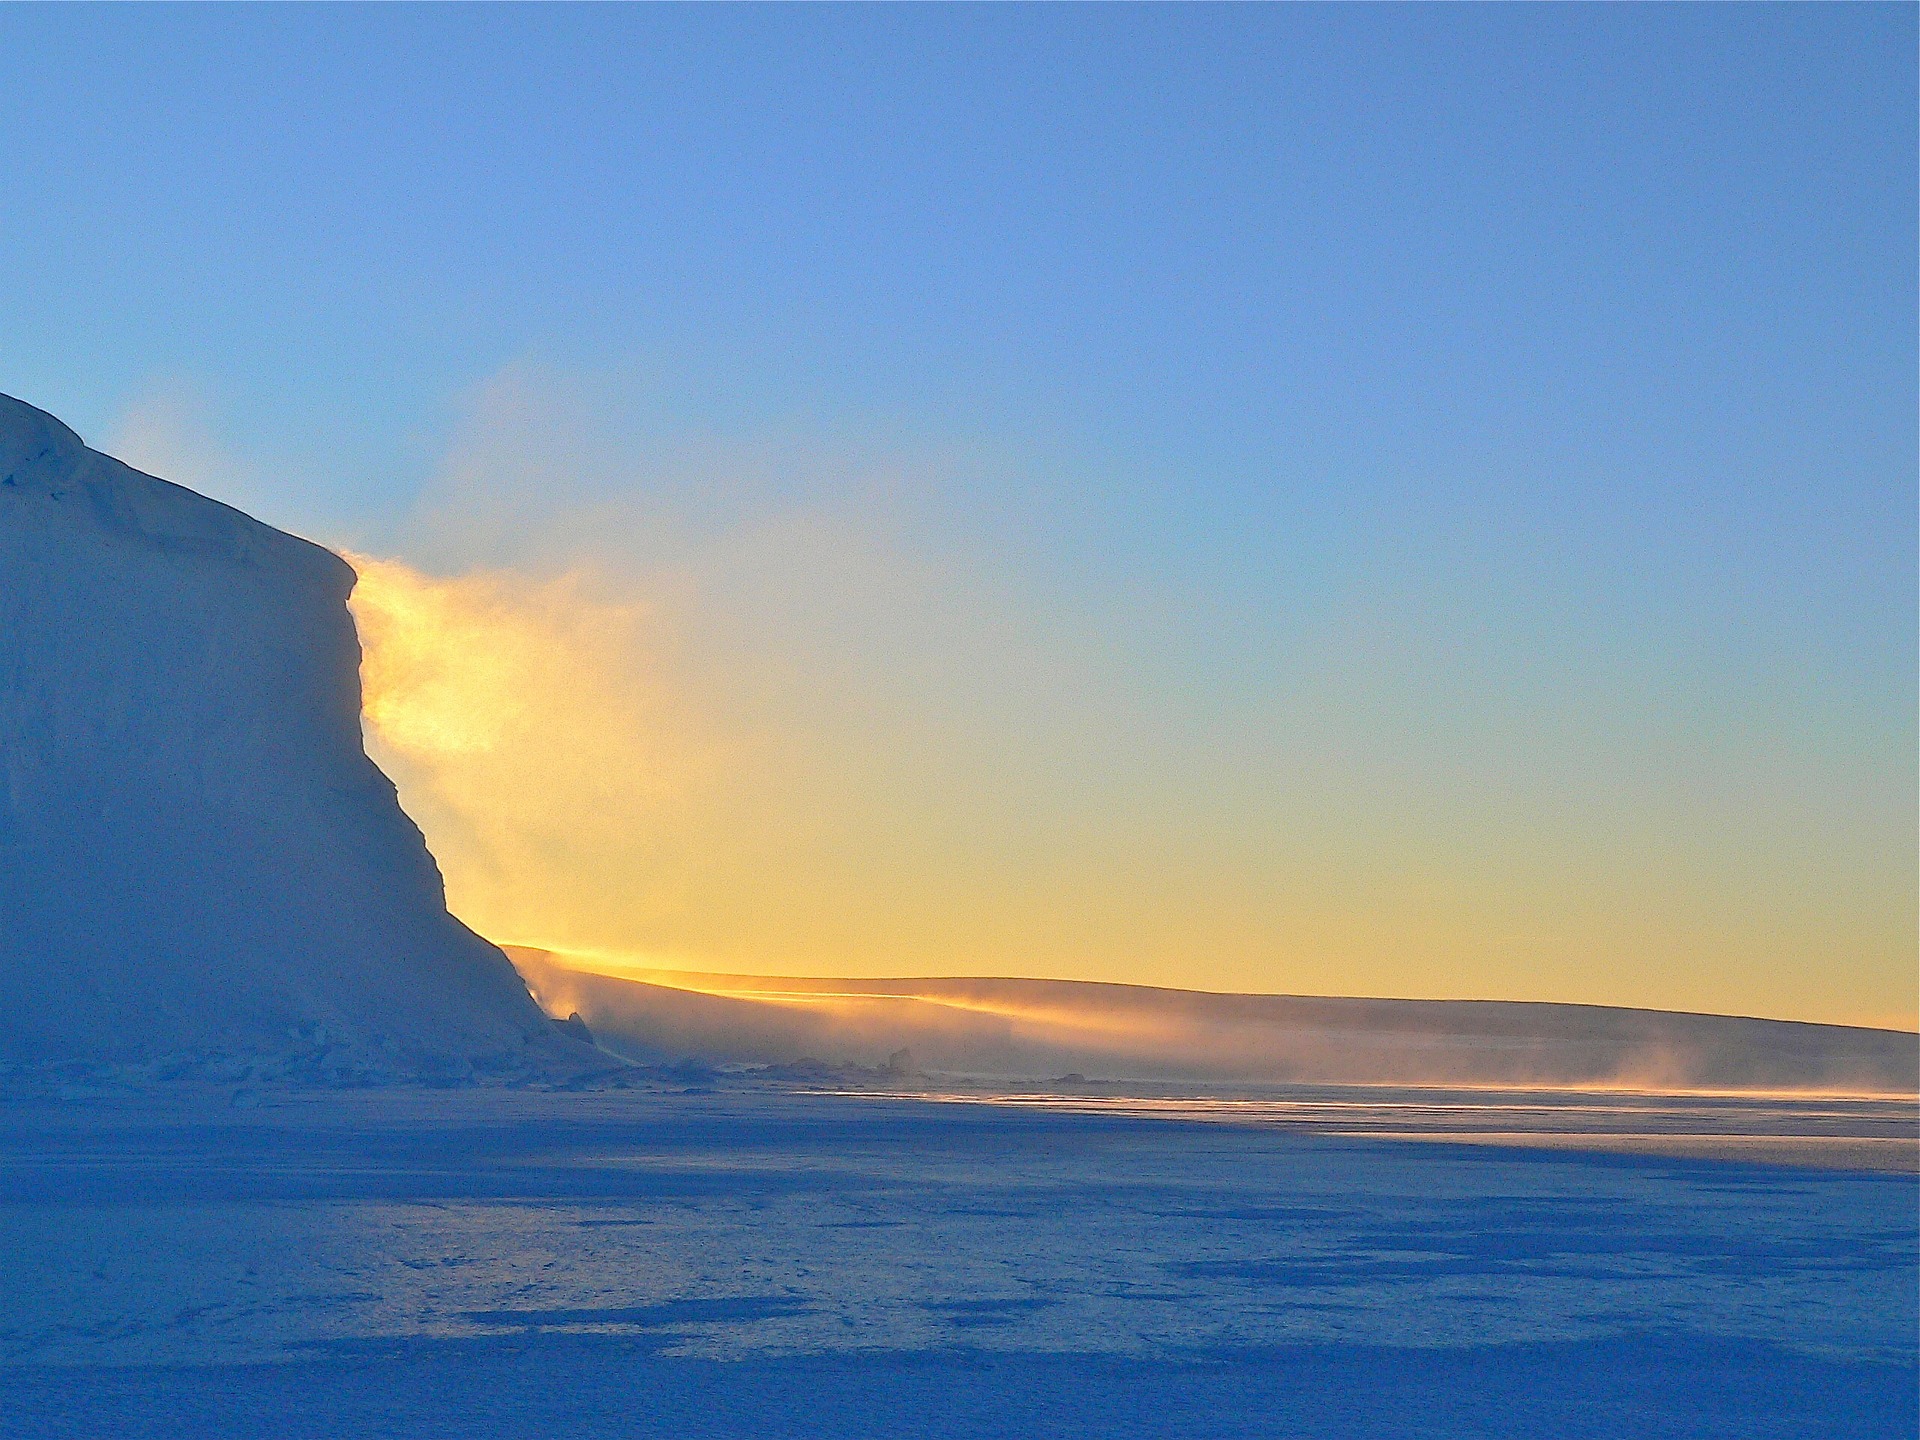 Арктика сегодня: законопроект, экспертиза и окололедокольная истерика